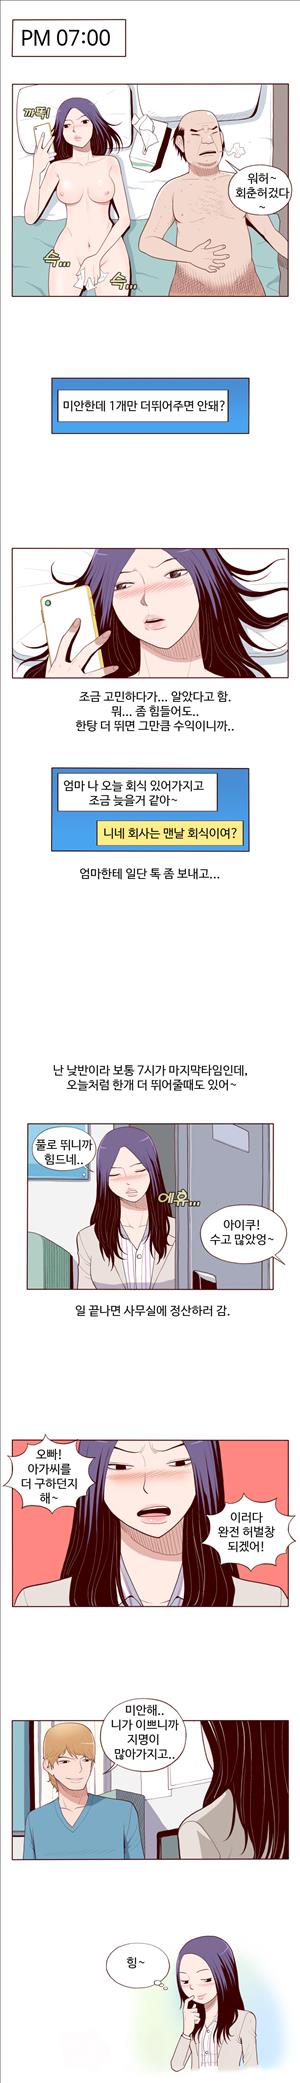 미색 - 썰만화 시즌4 50화 - 오피녀의 비밀(상)_4